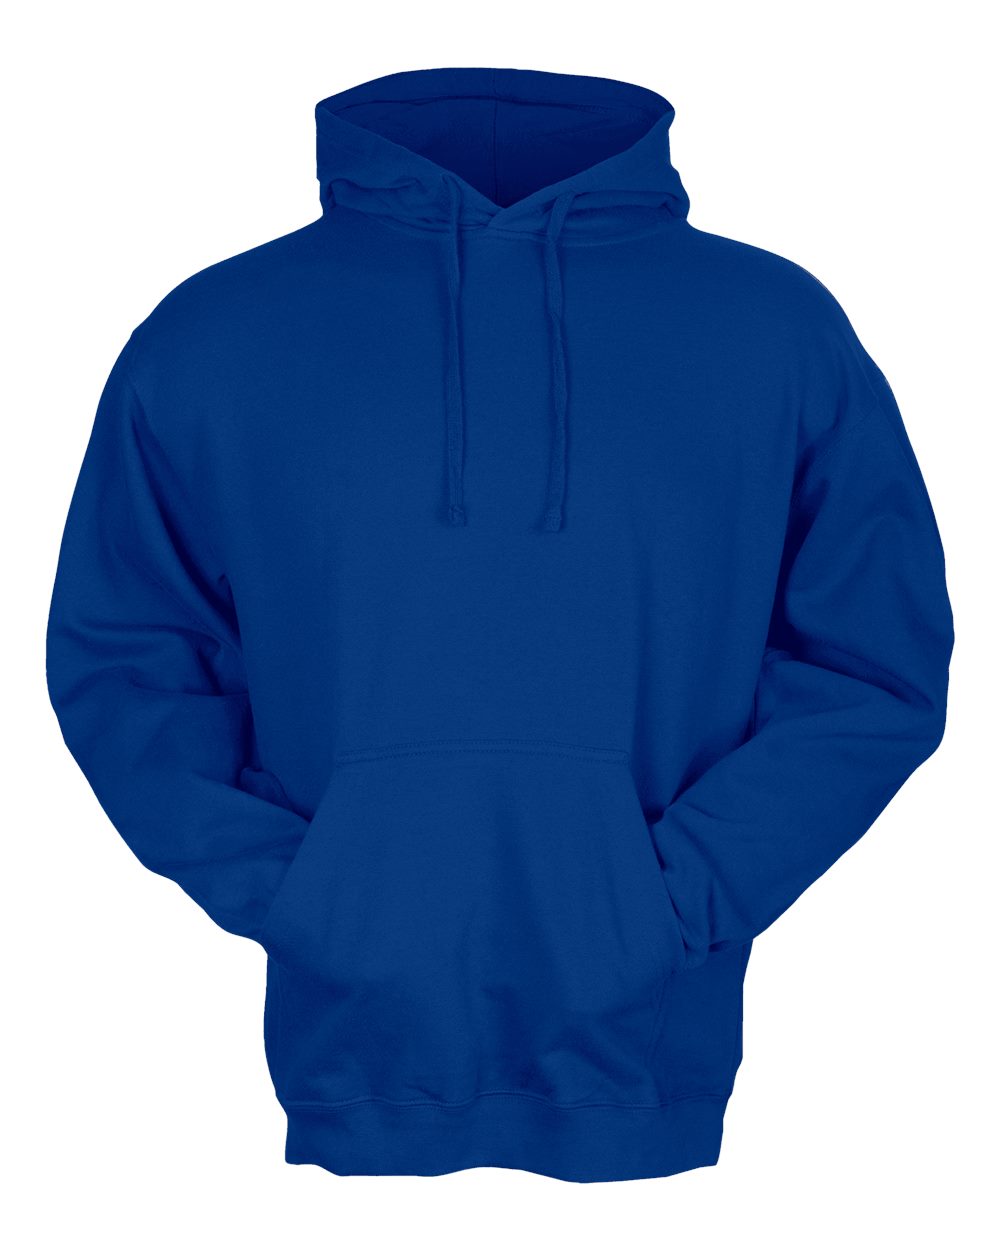 Tultex 320 - Unisex Fleece Hooded Sweatshirt